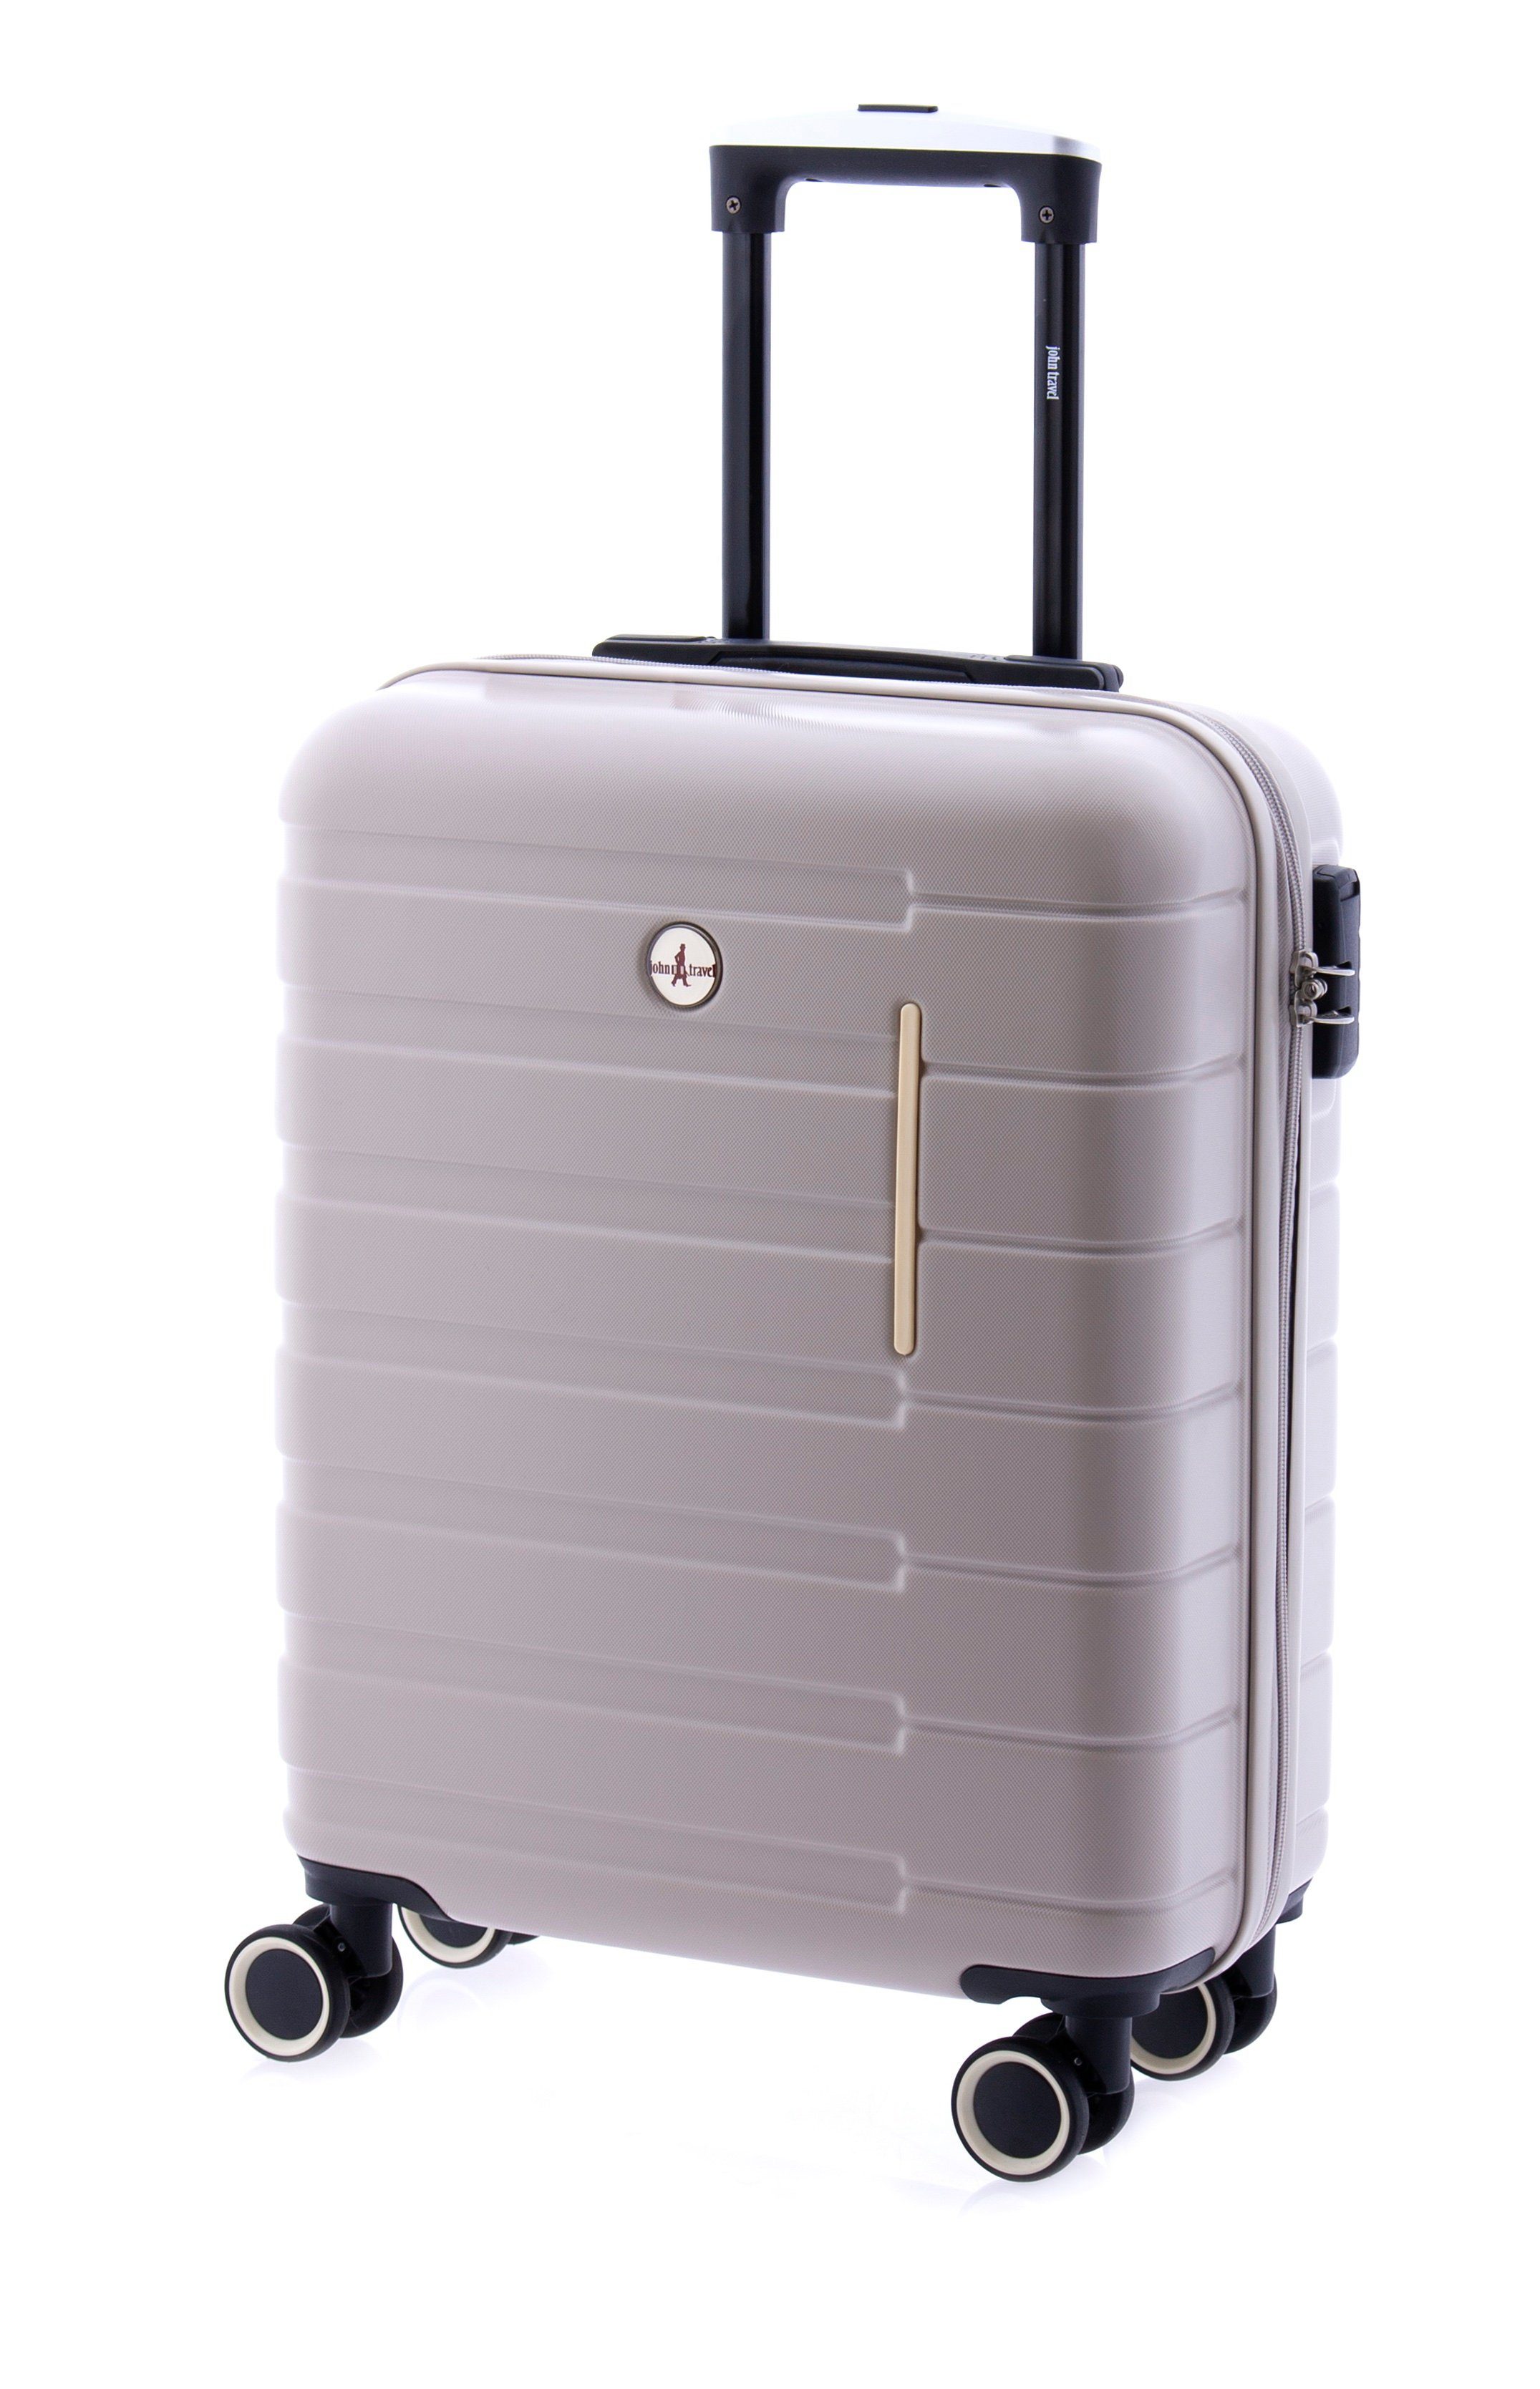 GLADIATOR Handgepäck-Trolley Koffer - 55cm - 4 Rollen beige | Handgepäck-Koffer